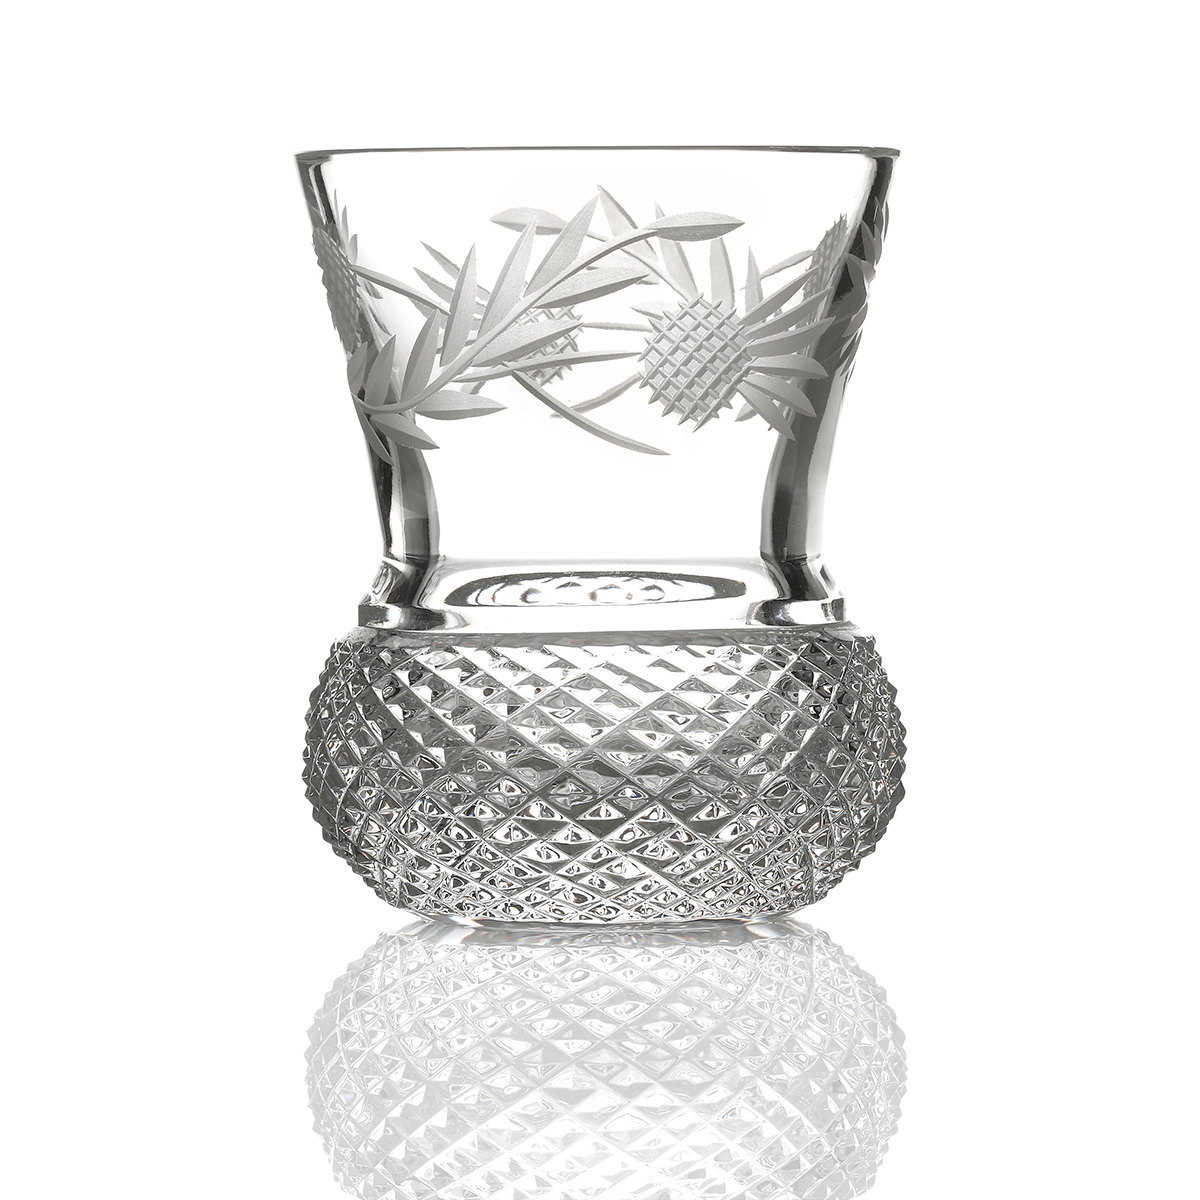 Flower of Scotland - Whiskyglas aus Schottland in Form einer Distel